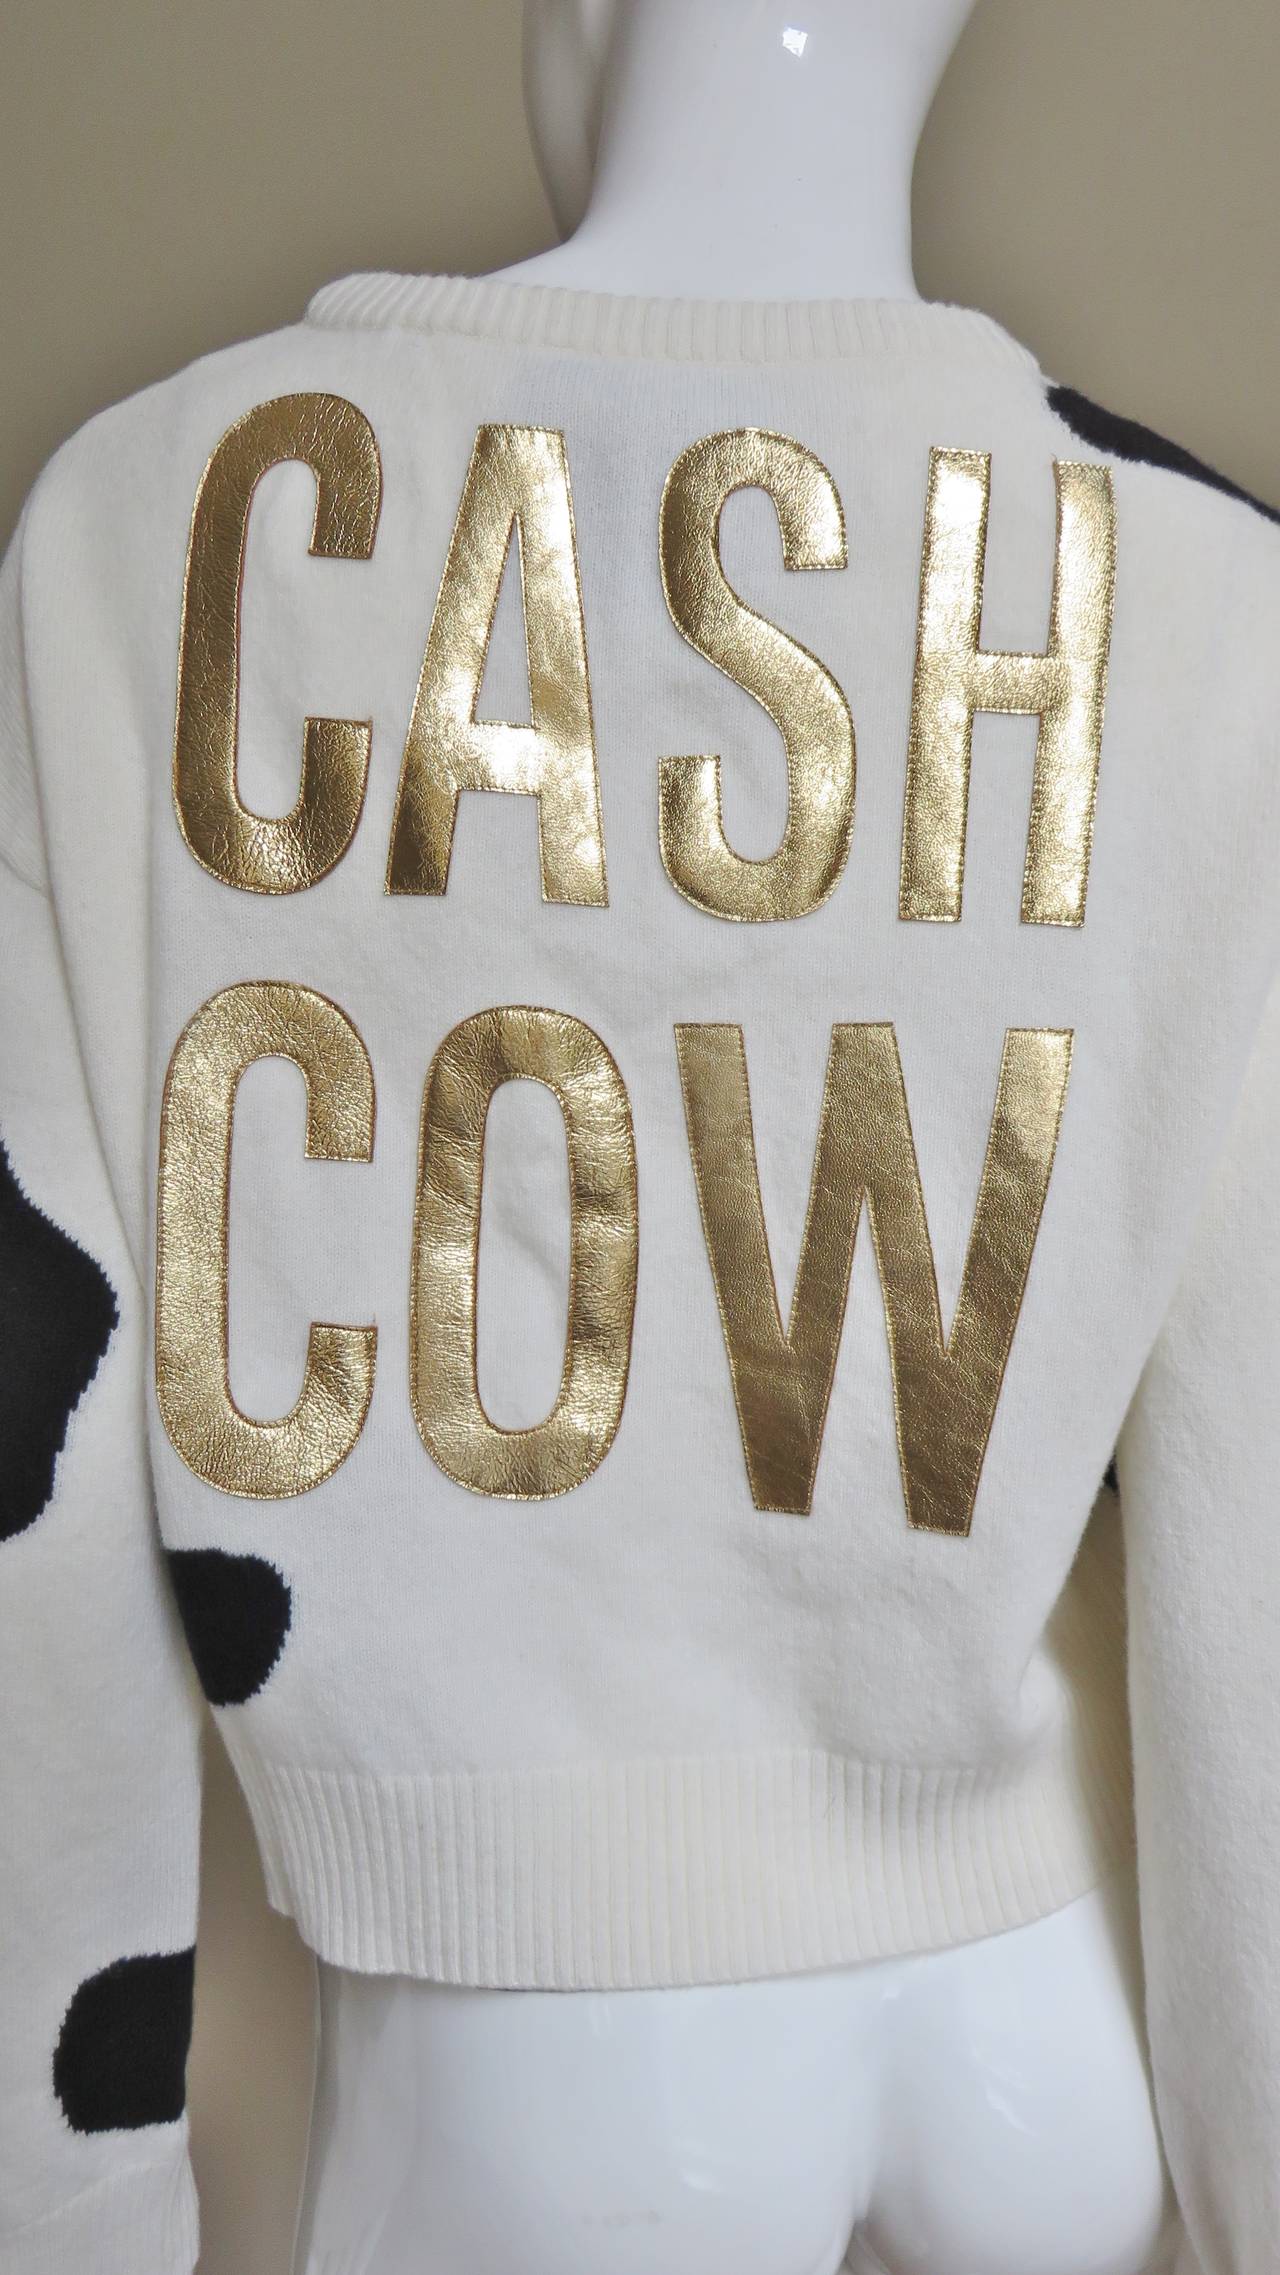 cash cow jacket